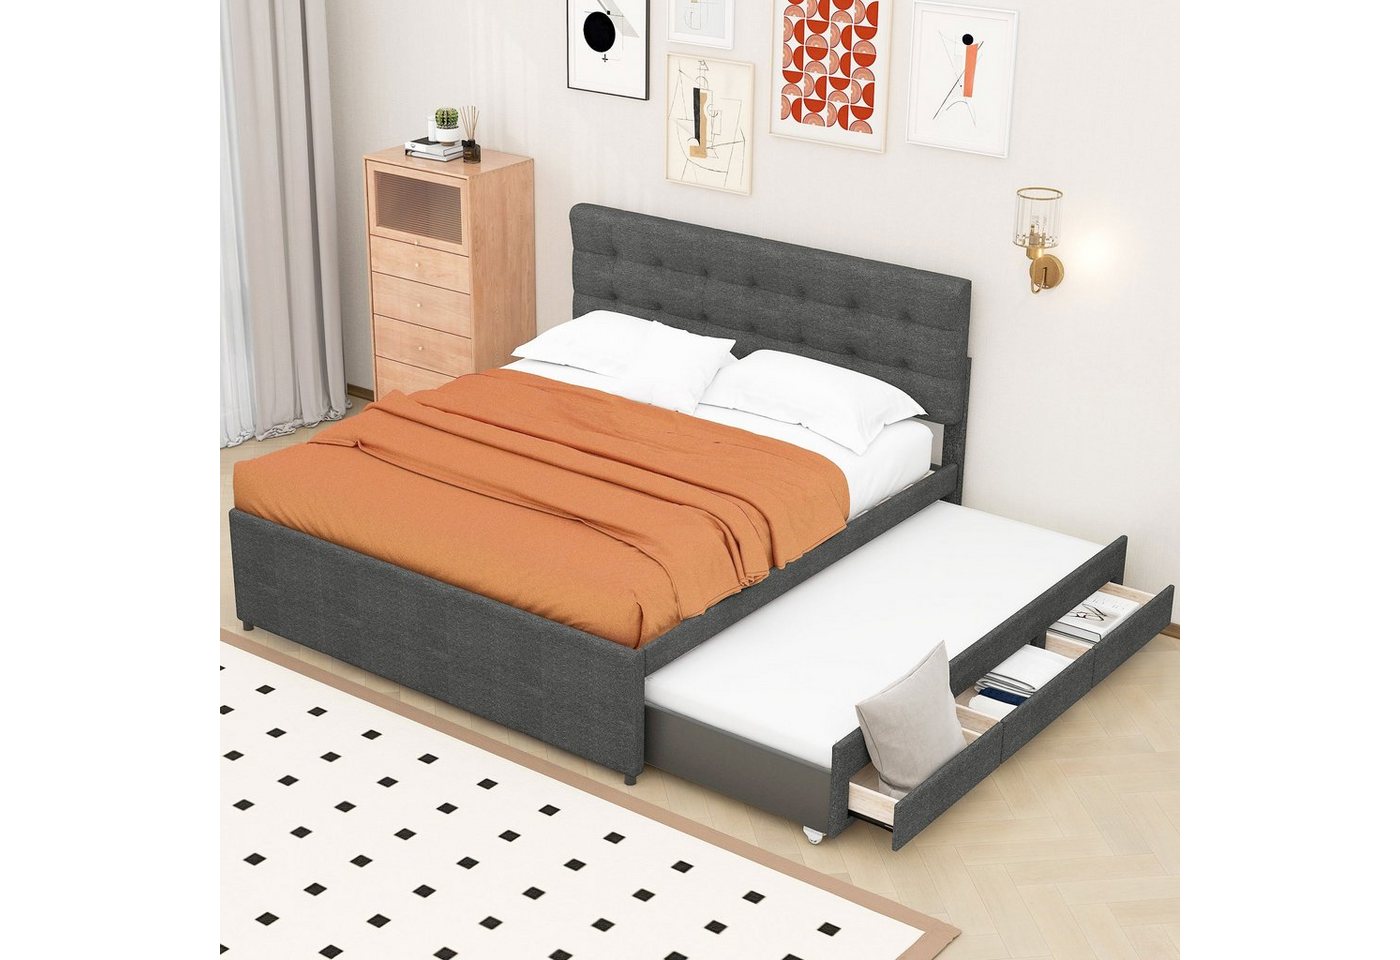 Sweiko Polsterbett, Doppelbett mit ausziehbarem Bett und 3 Schubladen, 140*200&90*190cm von Sweiko